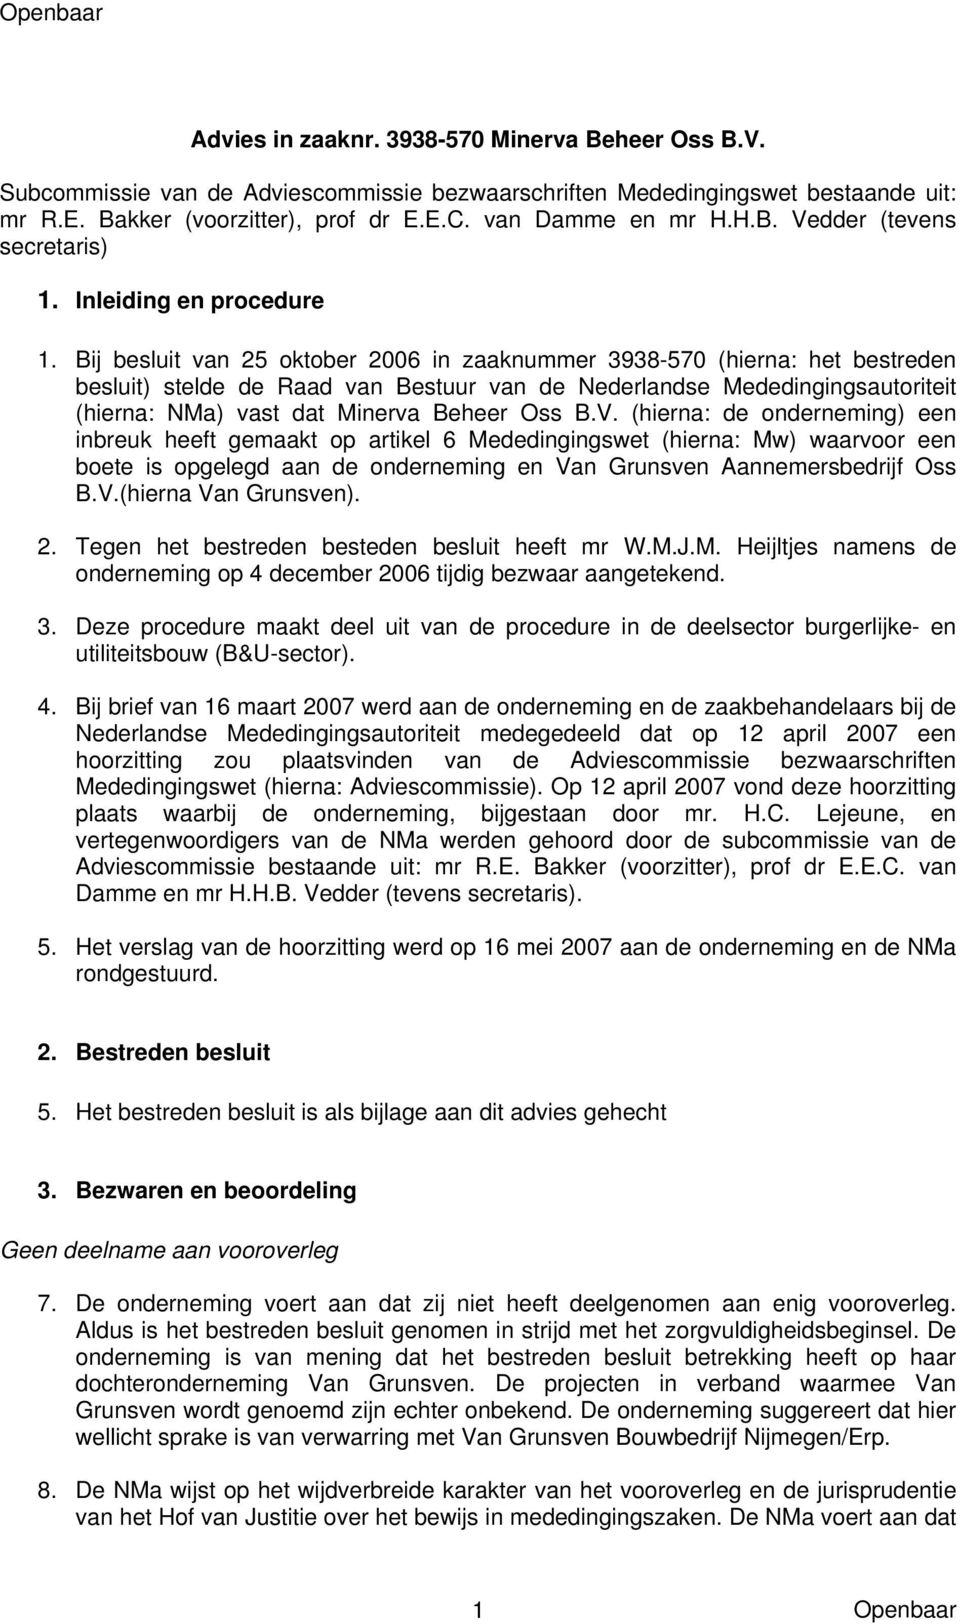 Bij besluit van 25 oktober 2006 in zaaknummer 3938-570 (hierna: het bestreden besluit) stelde de Raad van Bestuur van de Nederlandse Mededingingsautoriteit (hierna: NMa) vast dat Minerva Beheer Oss B.